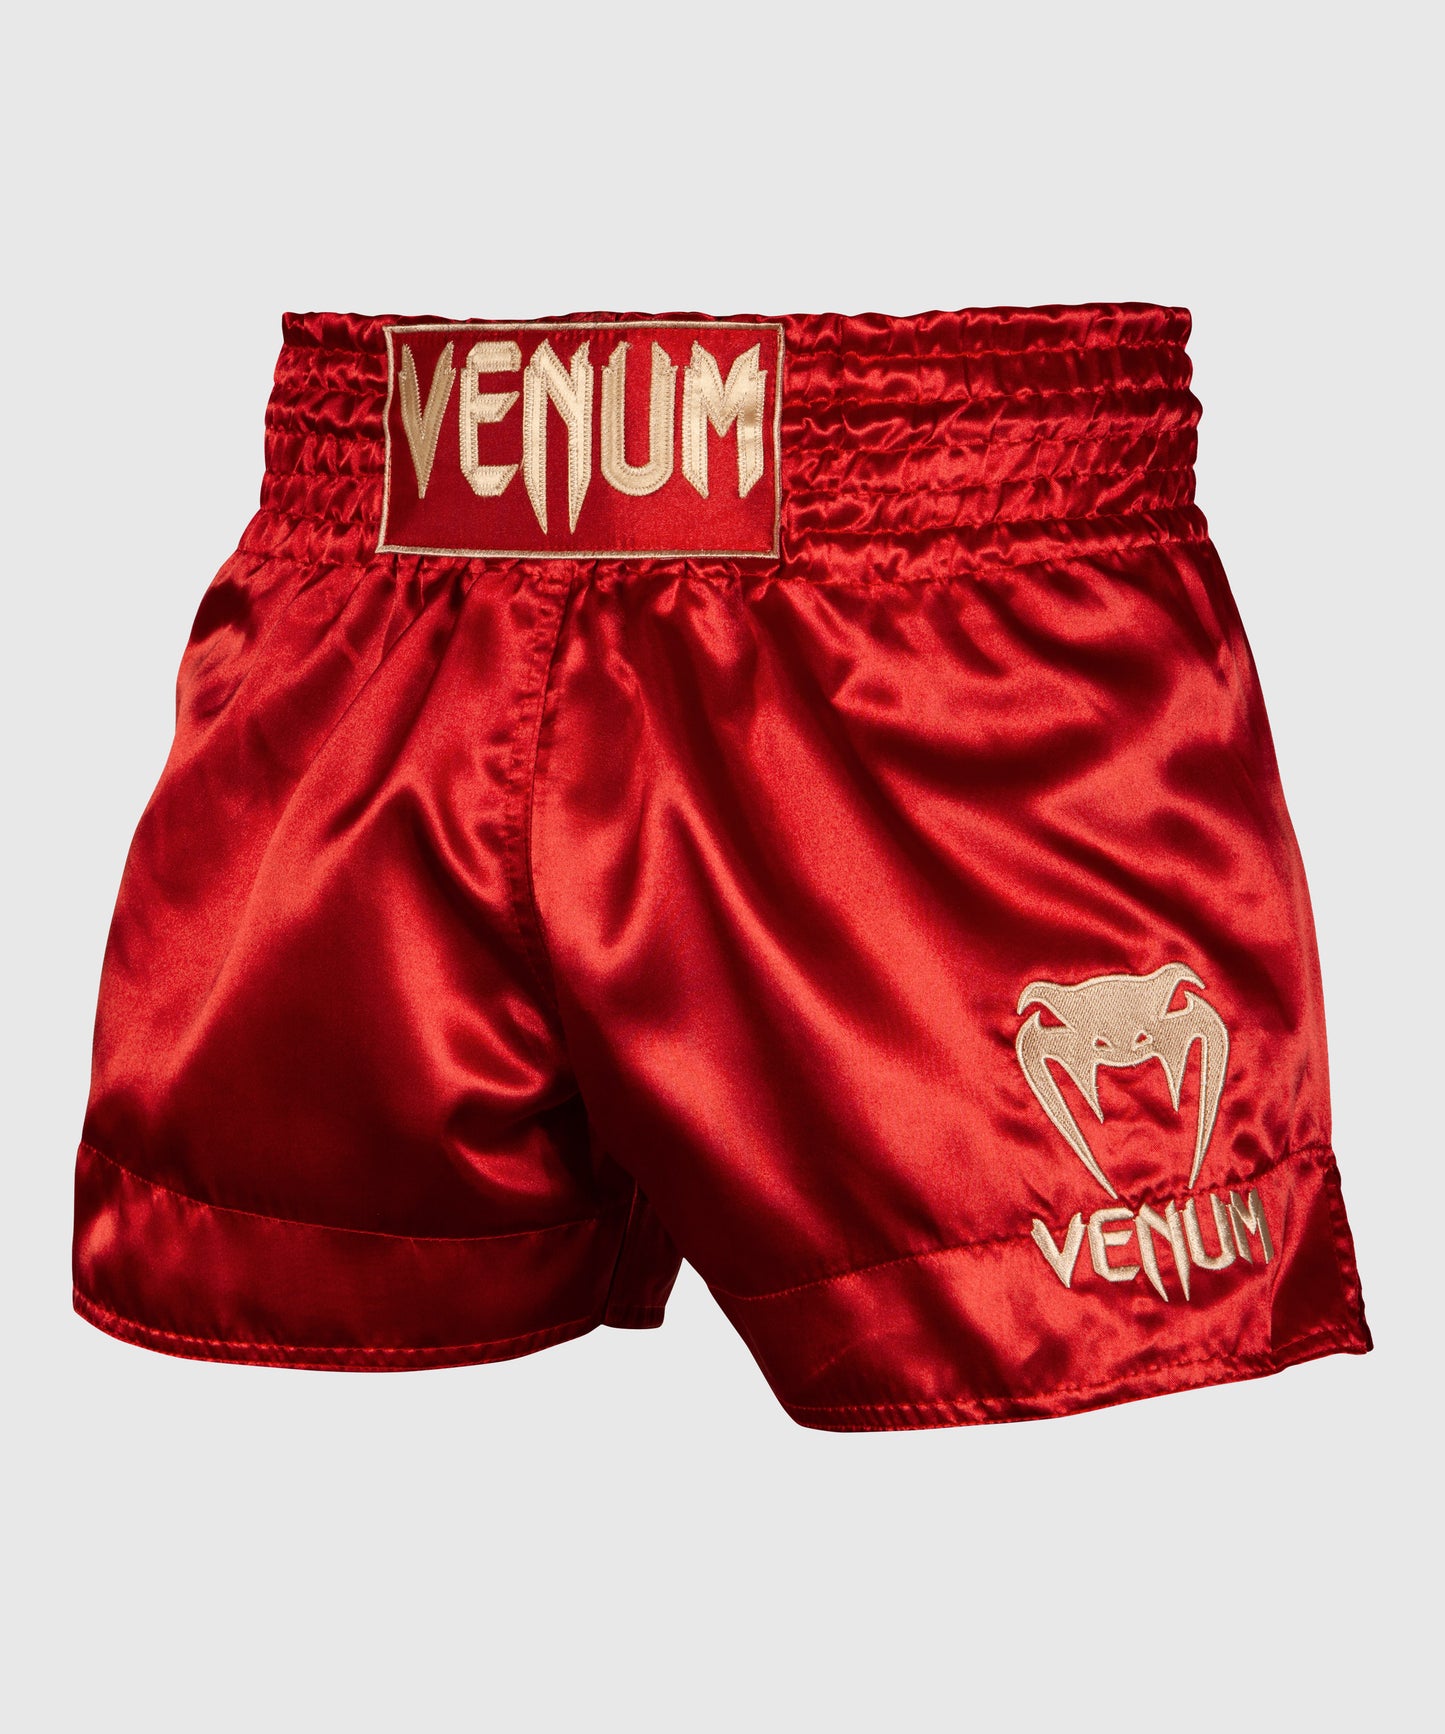 Short de Muay Thai Venum Classic - Burdeos/Oro